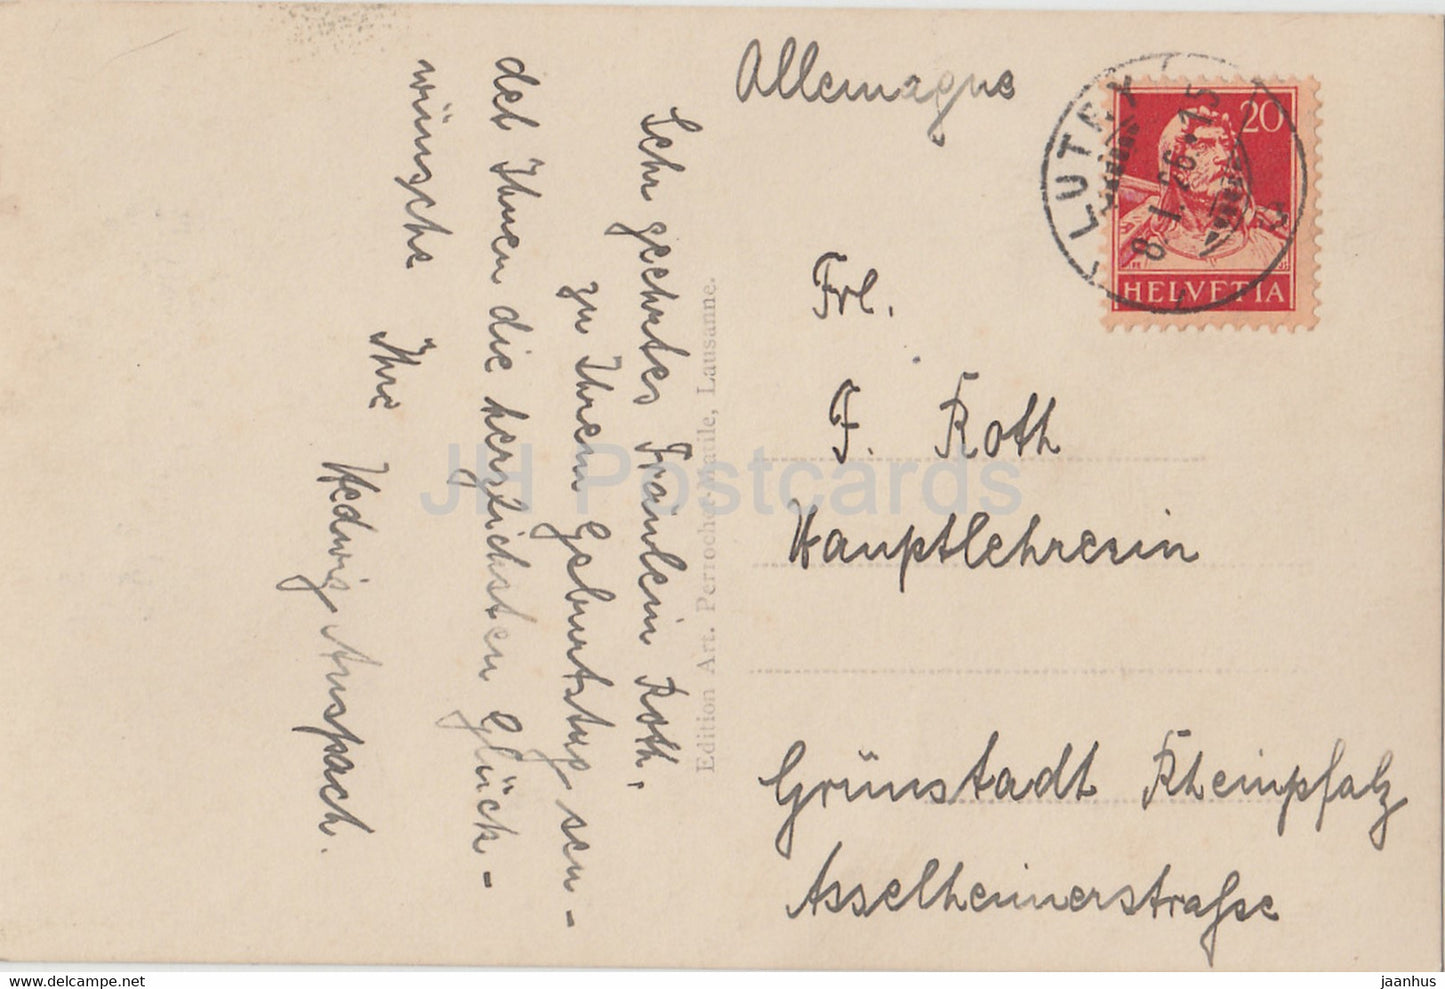 Chateau de Chillon et Montreux - 7394 - old postcard - 1926 - Switzerland - used